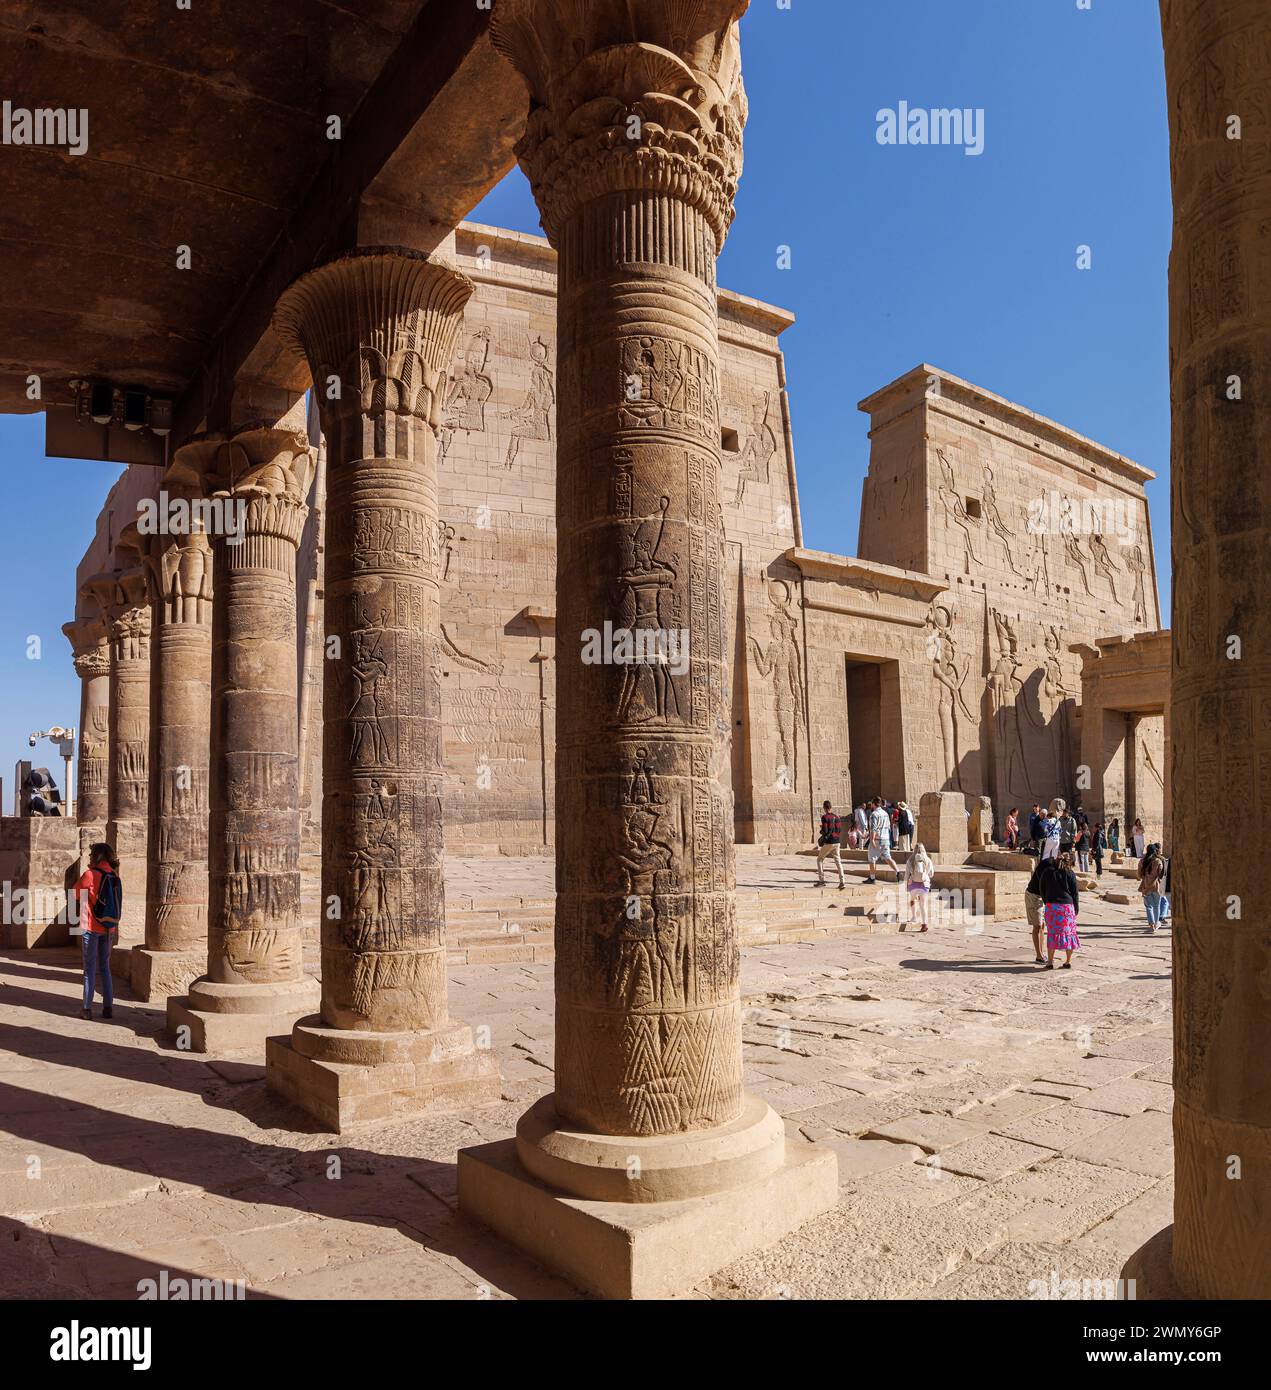 Egitto, Assuan, monumenti nubiani da Abu Simbel a file, patrimonio dell'umanità dell'UNESCO, tempio di Iside a file, colonnato e primo pilone Foto Stock